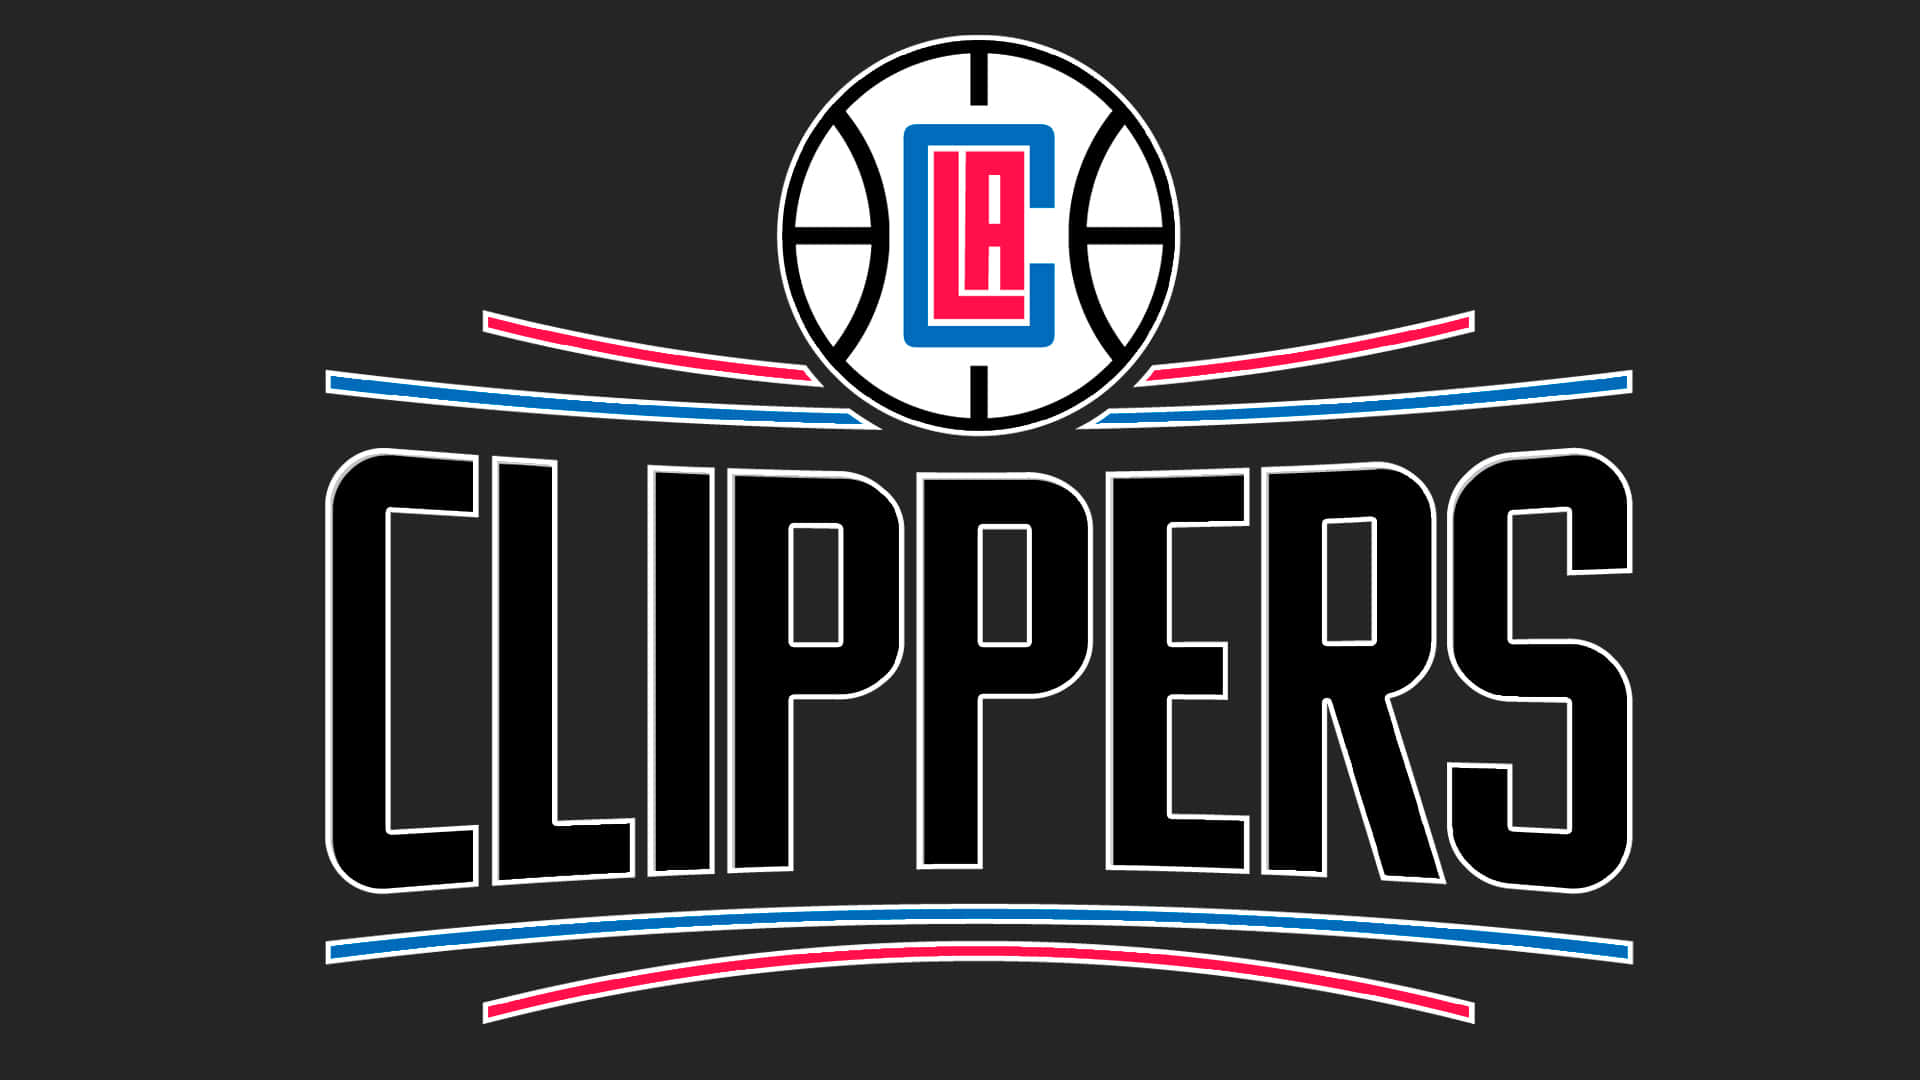 La Clippers 1920 X 1080 Wallpaper